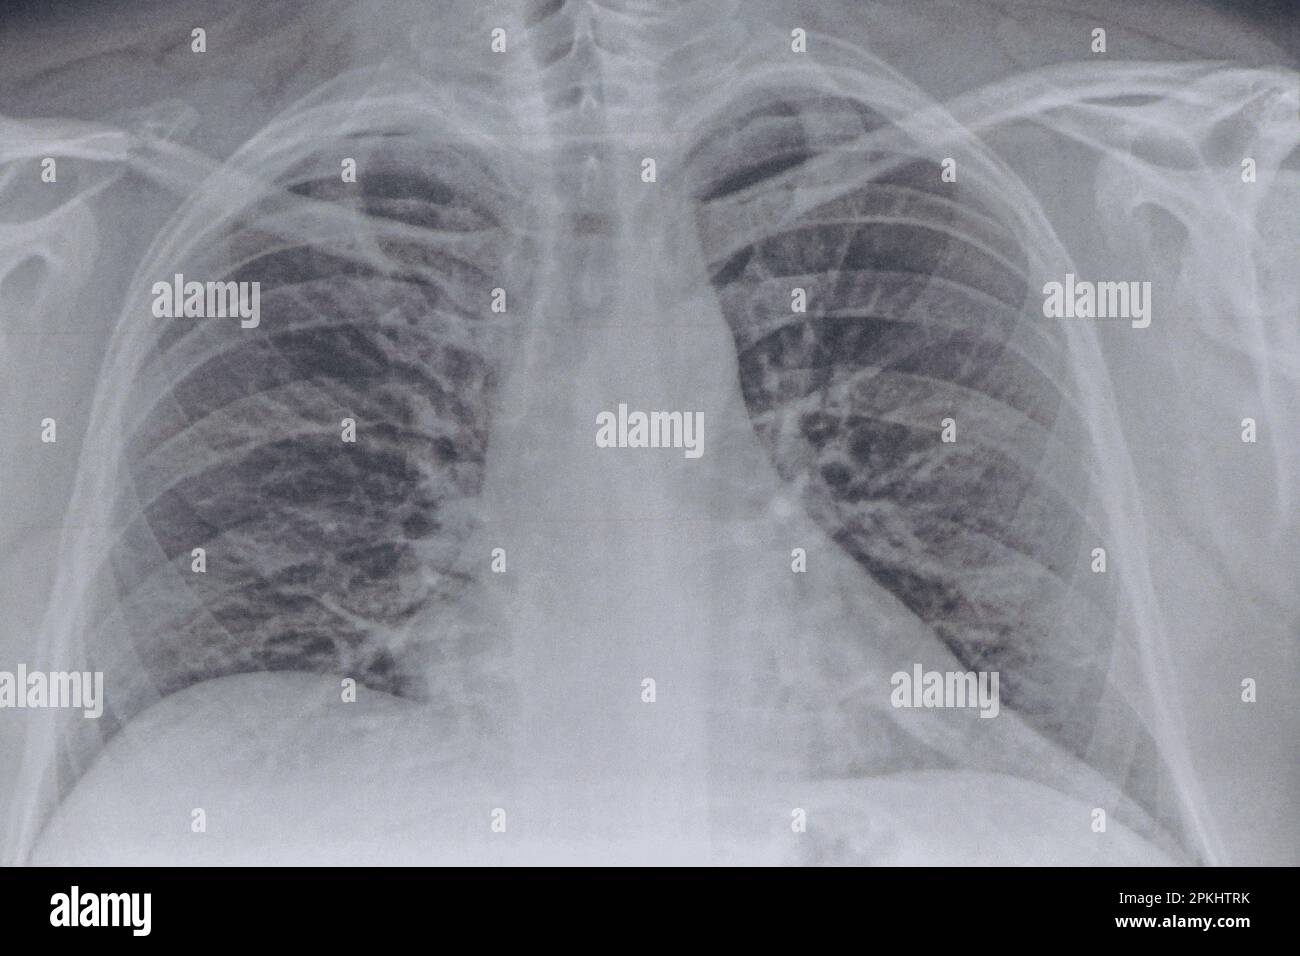 Immagine fluorografica dei polmoni su carta primo piano, polmoni sani di un uomo per un esame di routine, salute Foto Stock